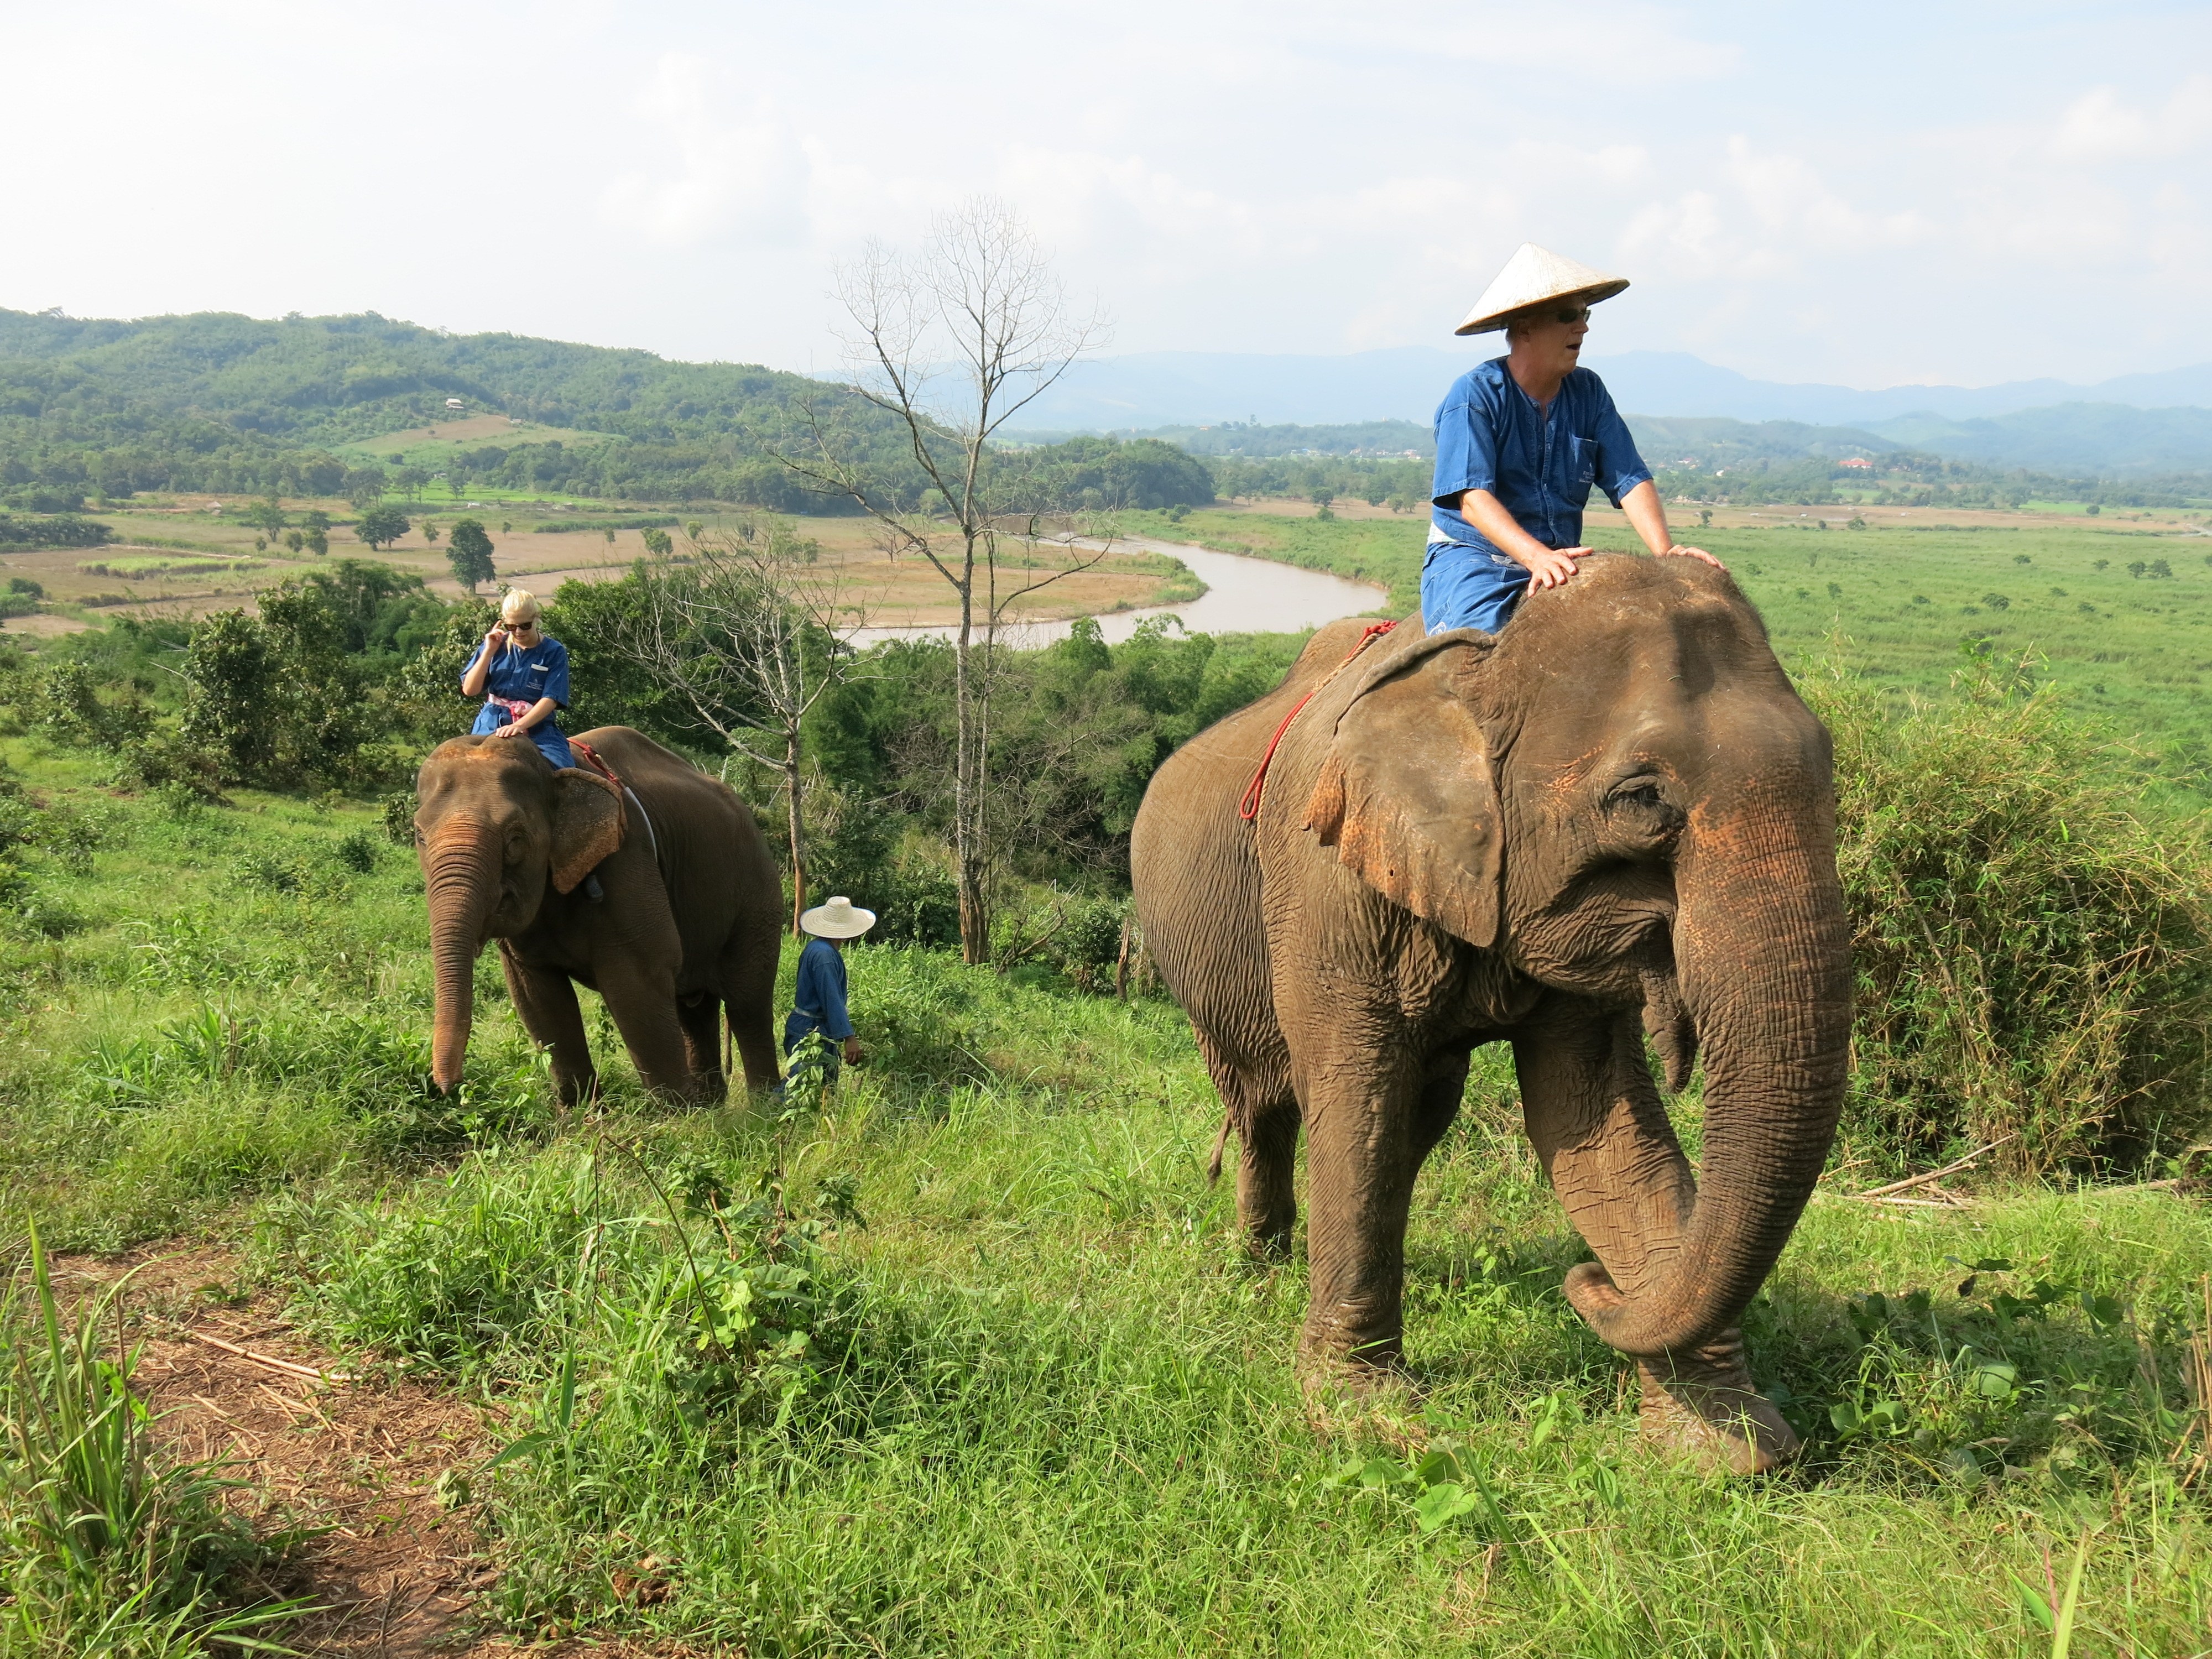 The Mekong Elephant Camp